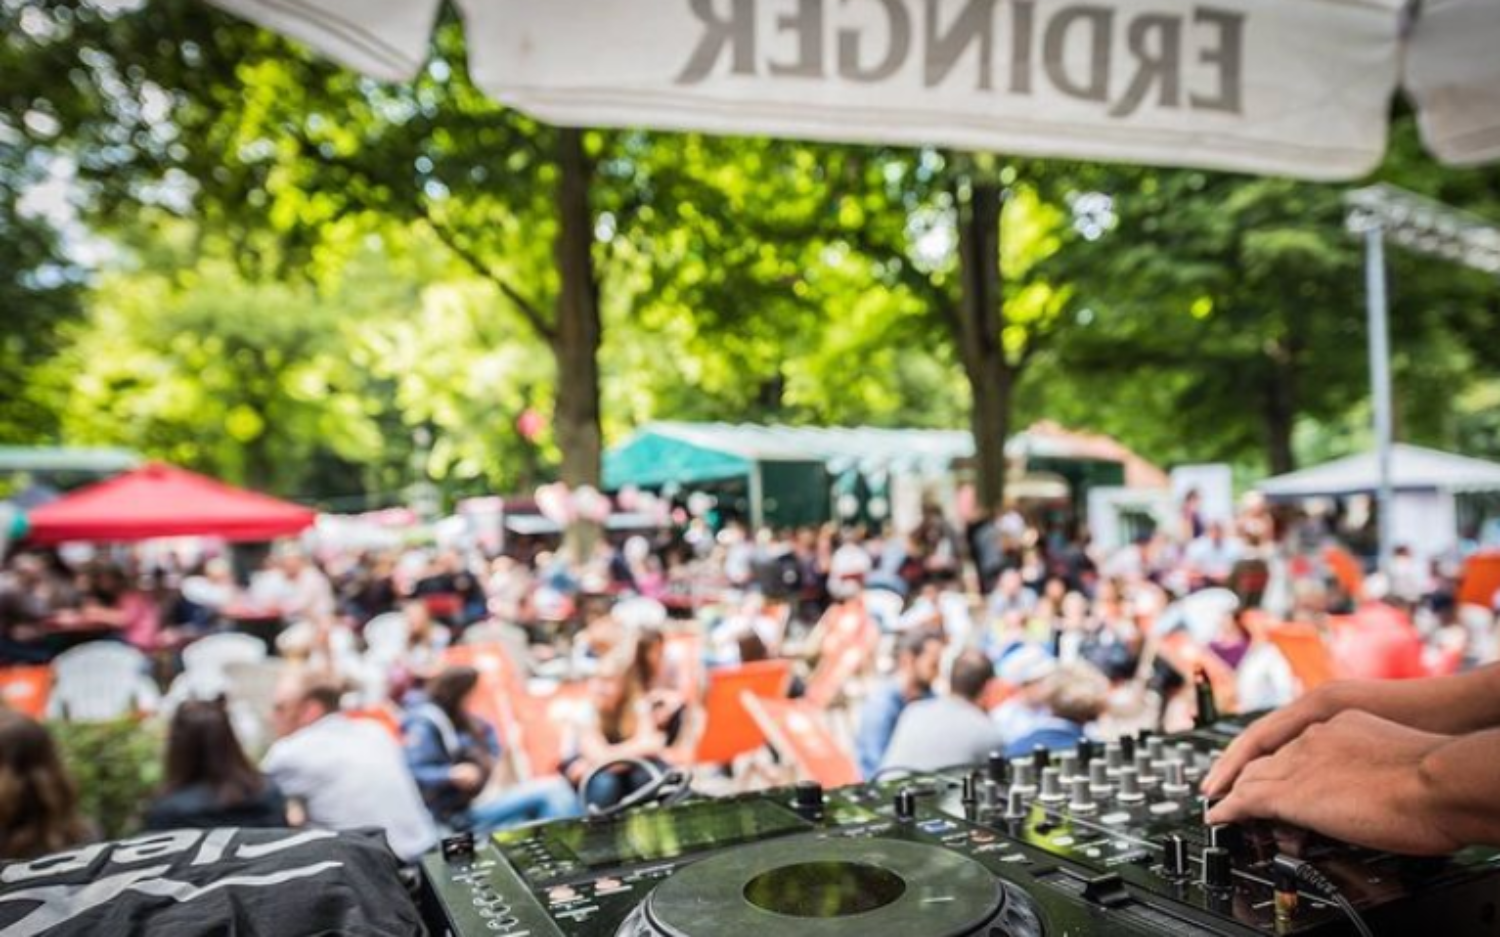 Venga Boys, Lenny Kravitz, Eiffel 65 und viele mehr: Der DJ spielt am Sonntag Klassiker aus den 90er Jahren / ©Landhaus Walter